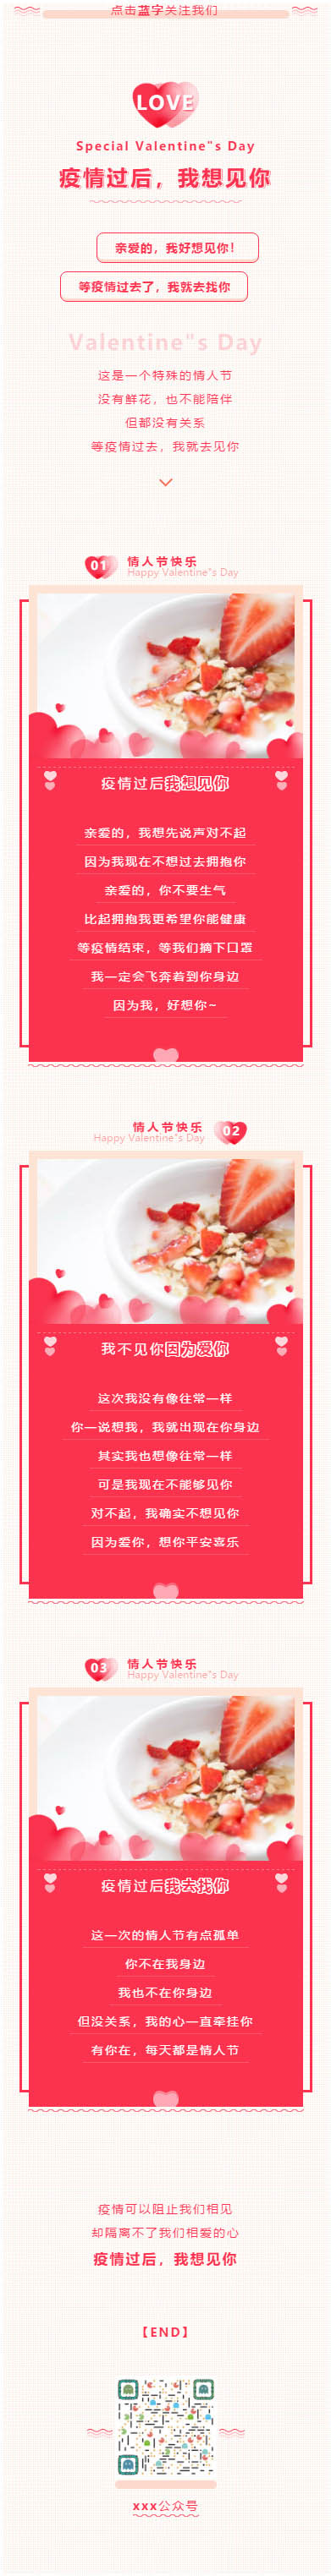 情人节Valentine”s Day爱情节日西方传统节日粉红色微信推文模板推送图文素材